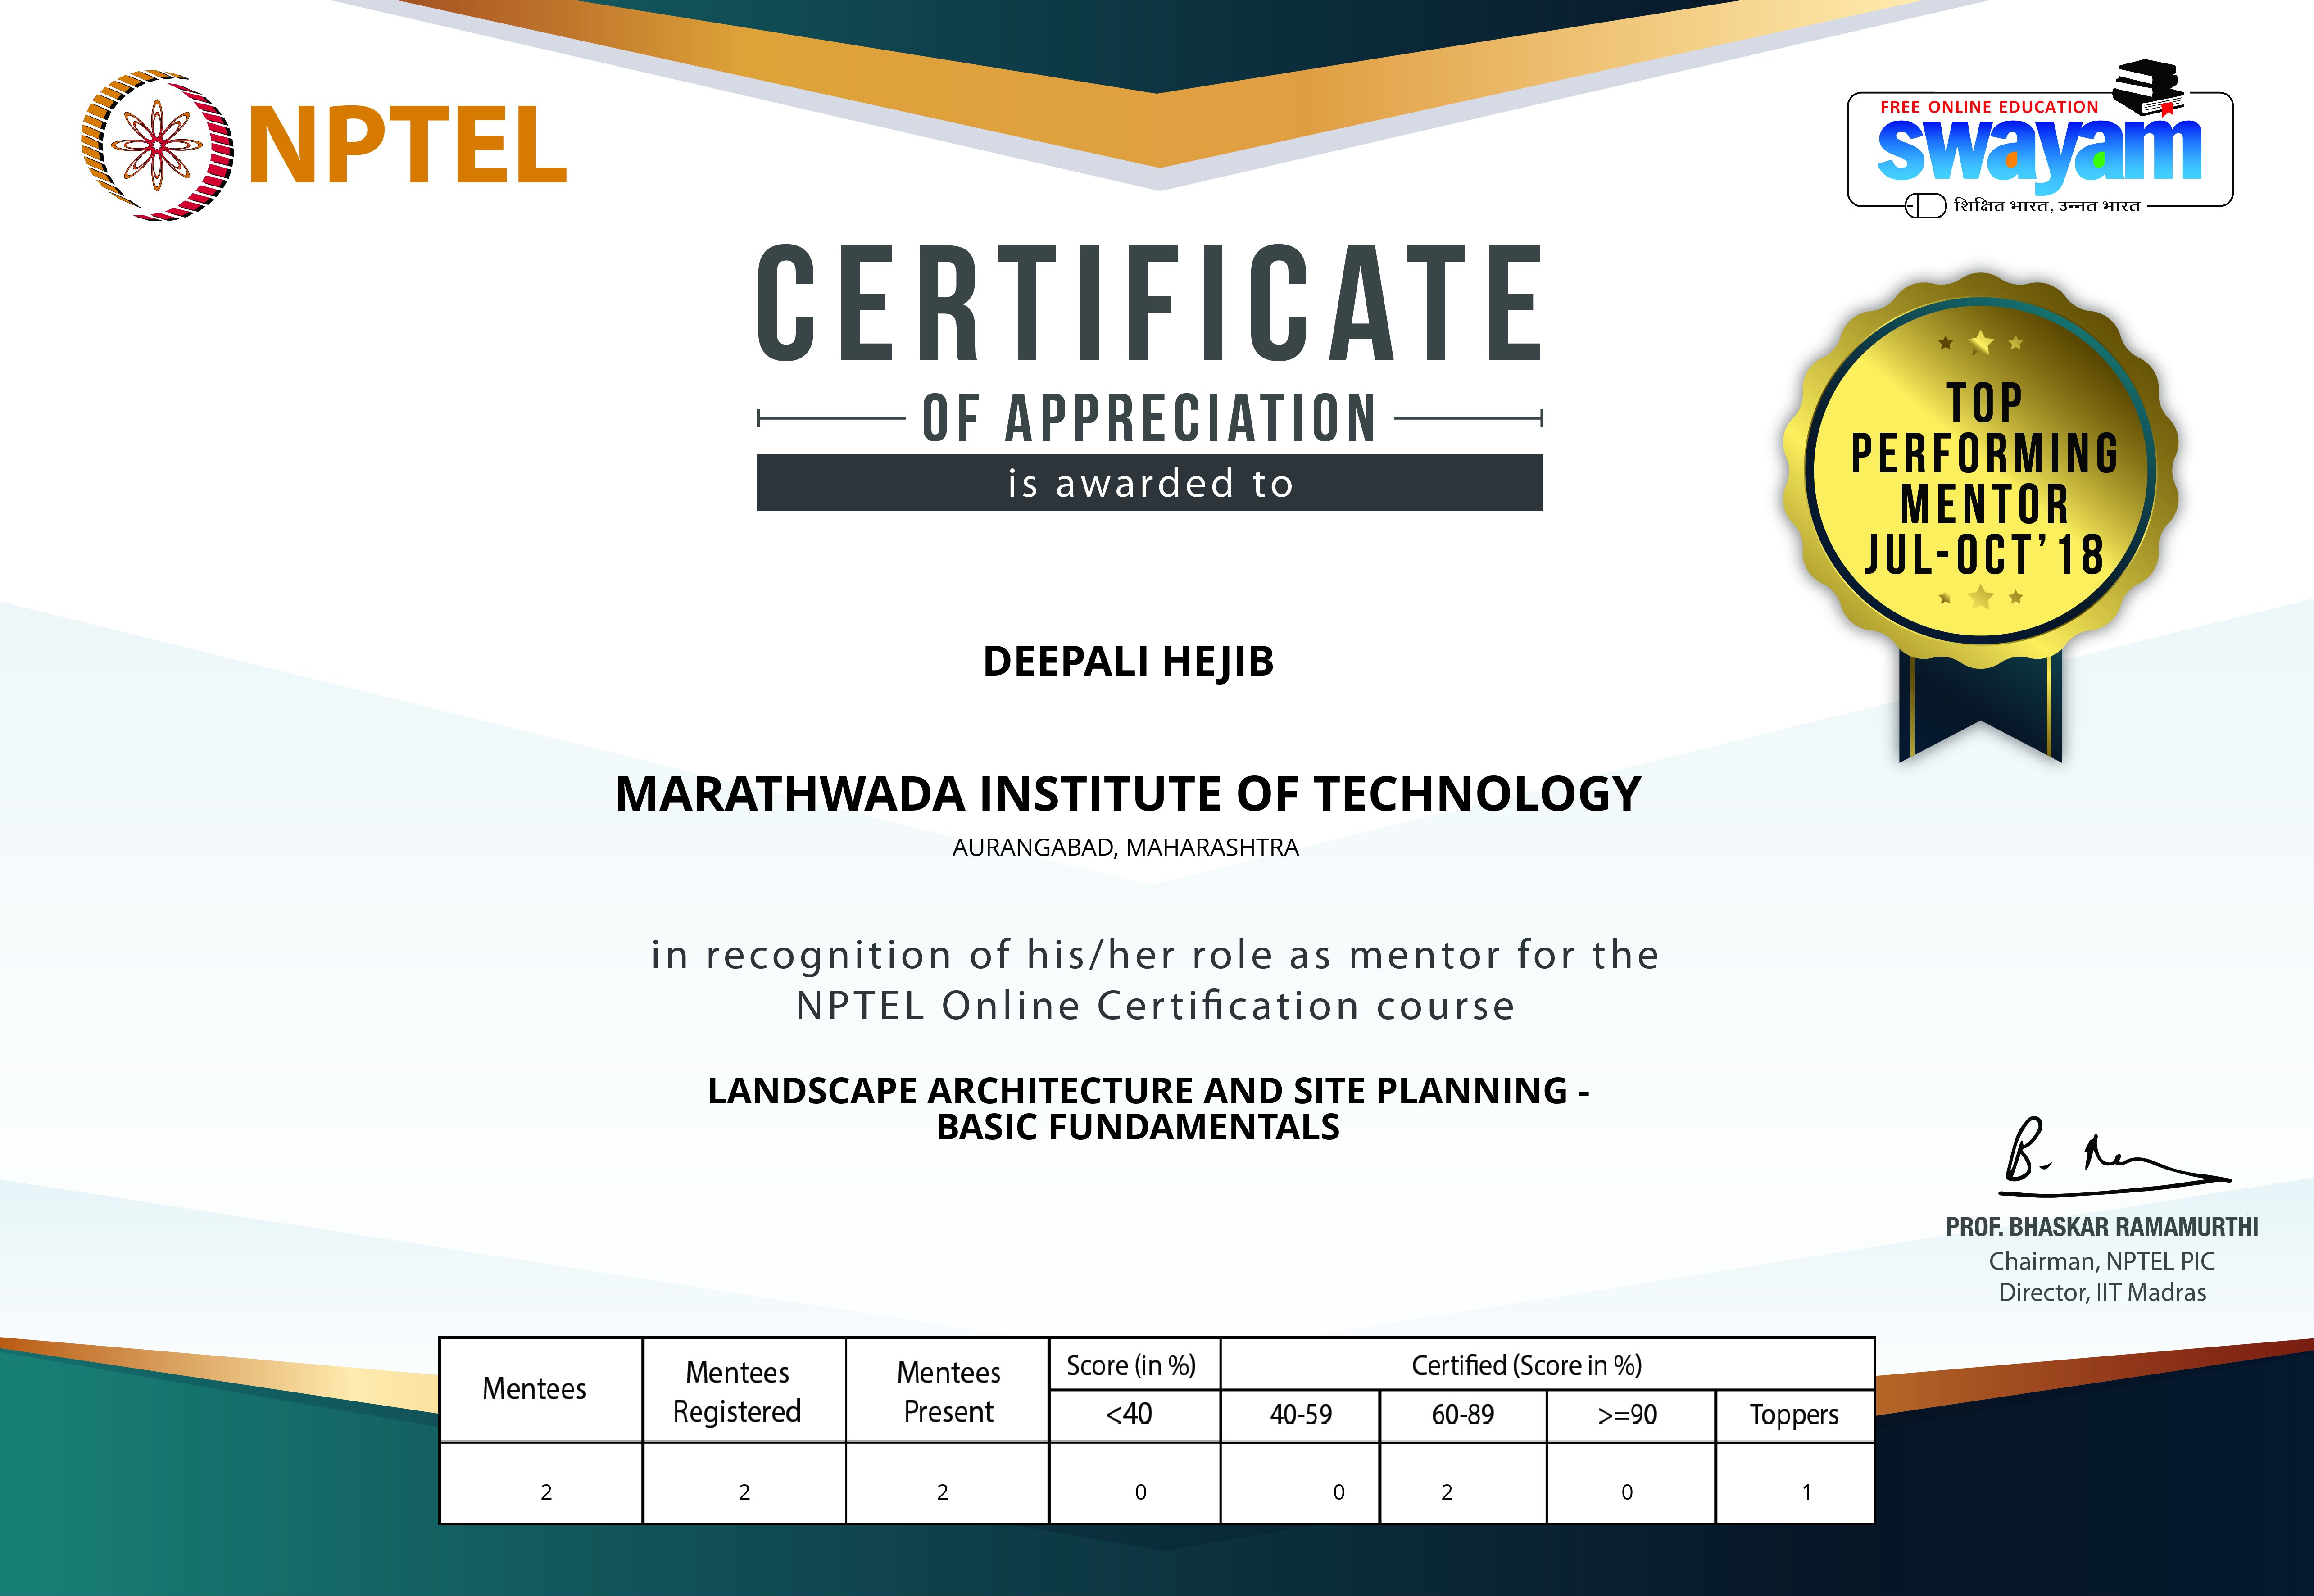 Top Performing Mentor Certificate in NPTEL 2018 